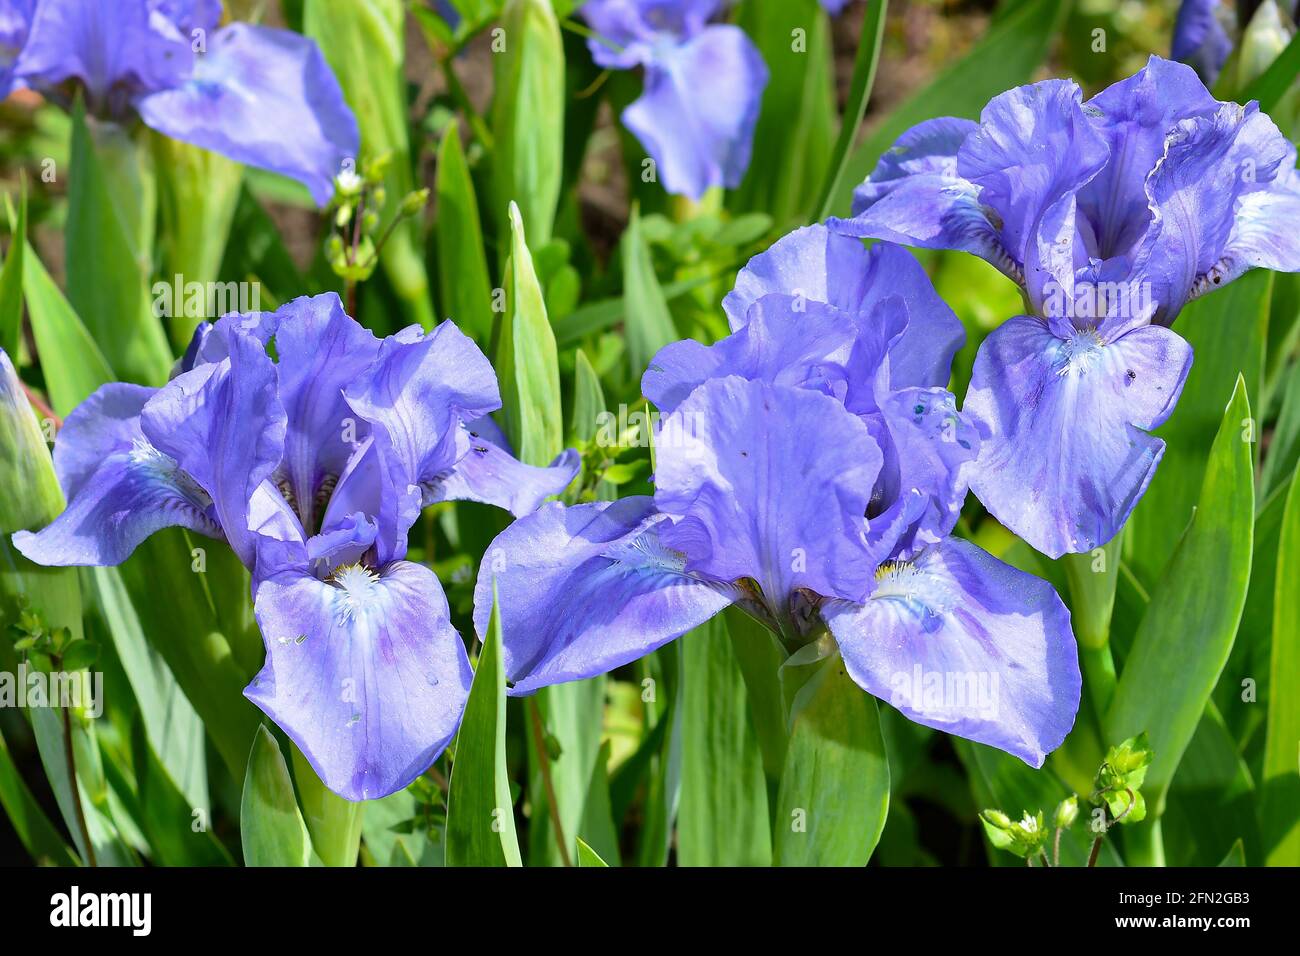 Hermosas flores de lirios púrpura grandes y coloridas que crecen en un prado en el jardín. Foto de stock